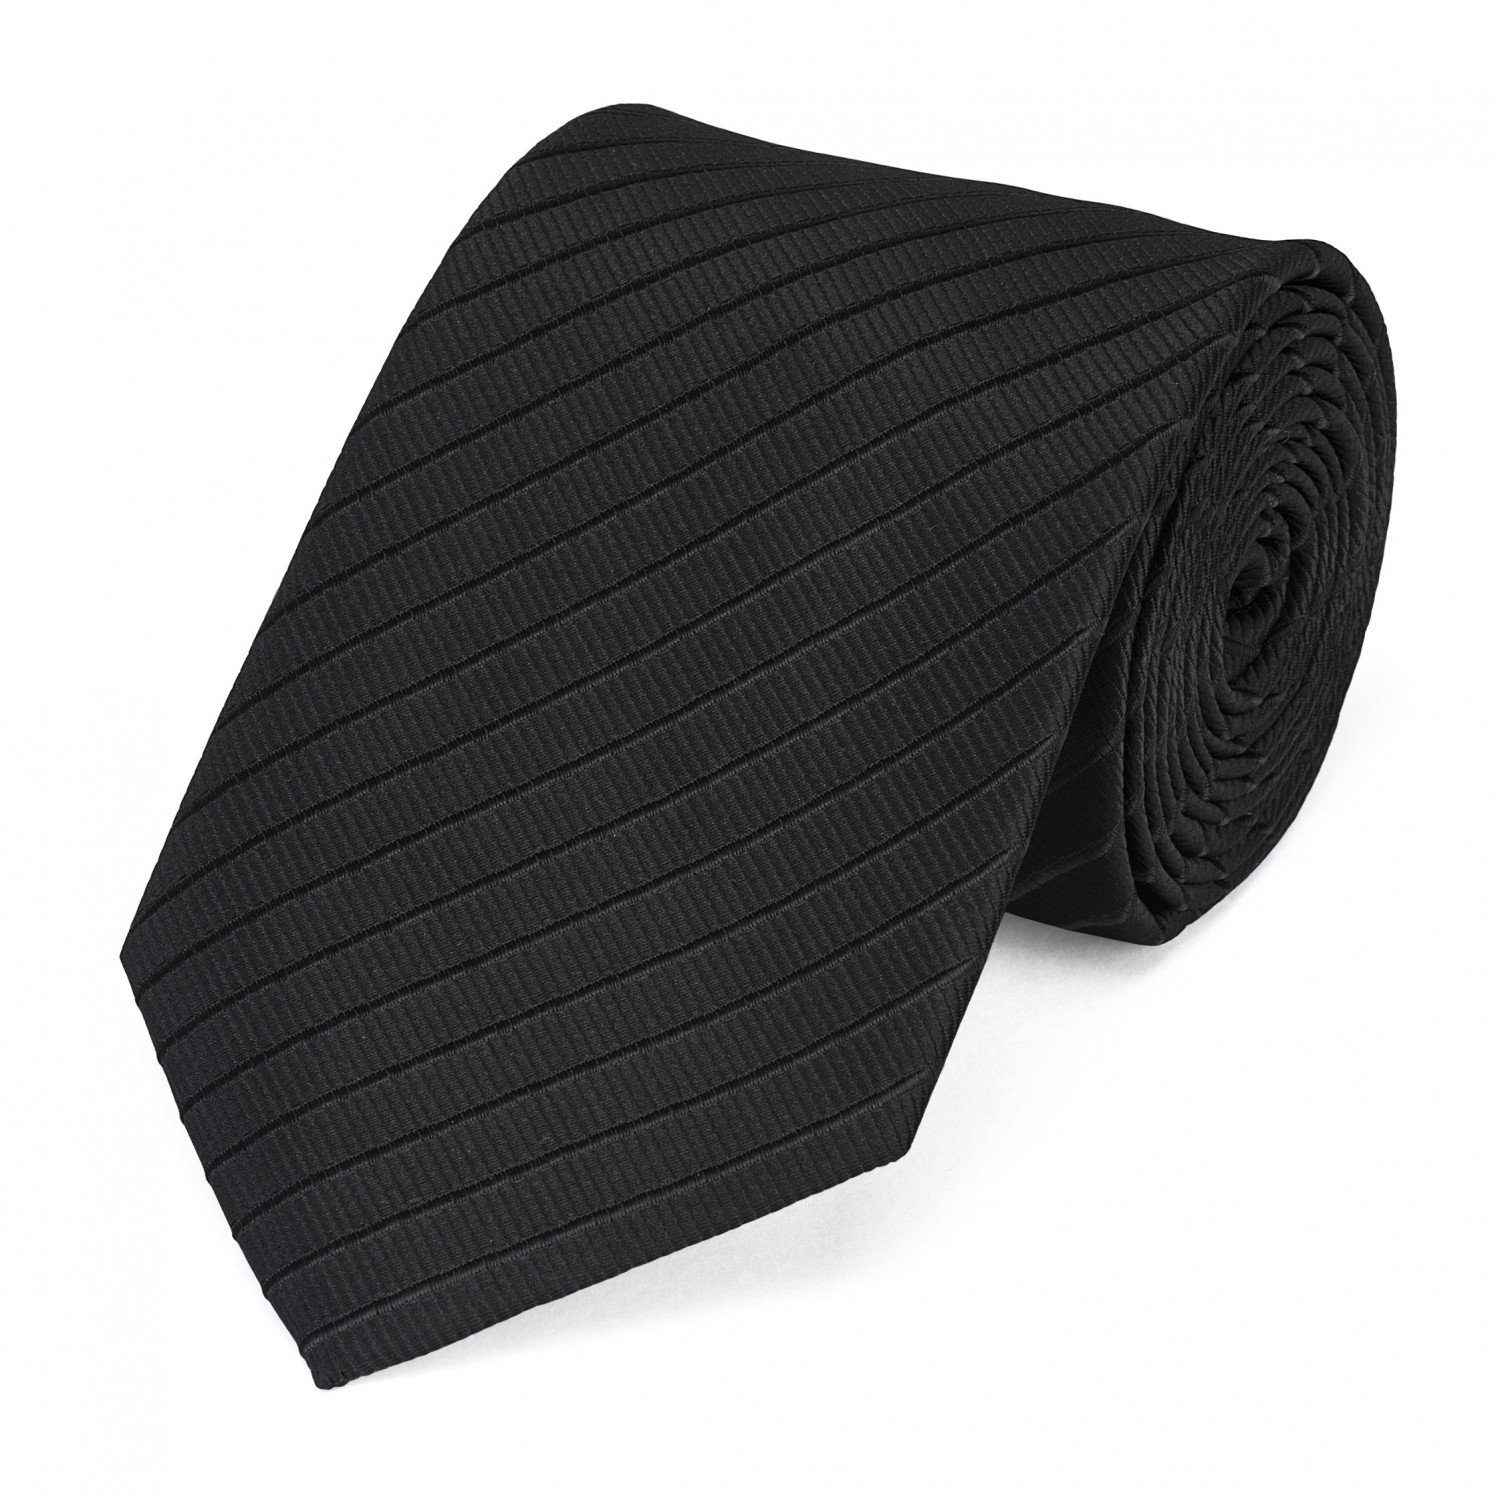 Fabio Farini Krawatte gestreifte Herren Krawatte - Tie mit Streifen in 6cm oder 8cm Breite (ohne Box, Gestreift) Breit (8cm), Schwarz feine Struktur